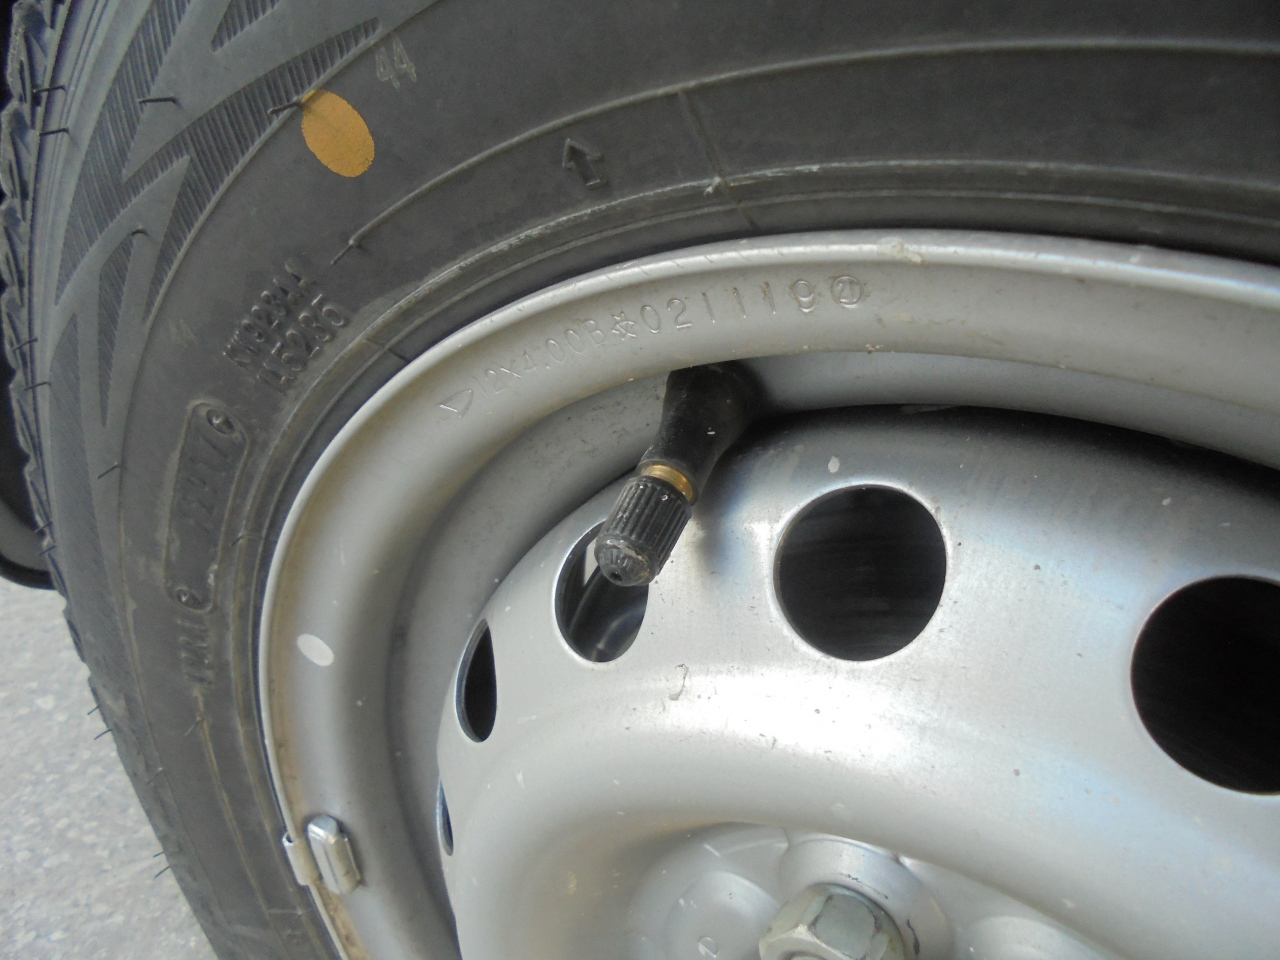 旭川のタイヤセレクト 新品タイヤ交換時は ゴムバルブも一緒に替えましょう 19 04 09 旭川のタイヤセレクト タイヤセレクト豊岡 タイヤセレクト タイヤランド Dunlop